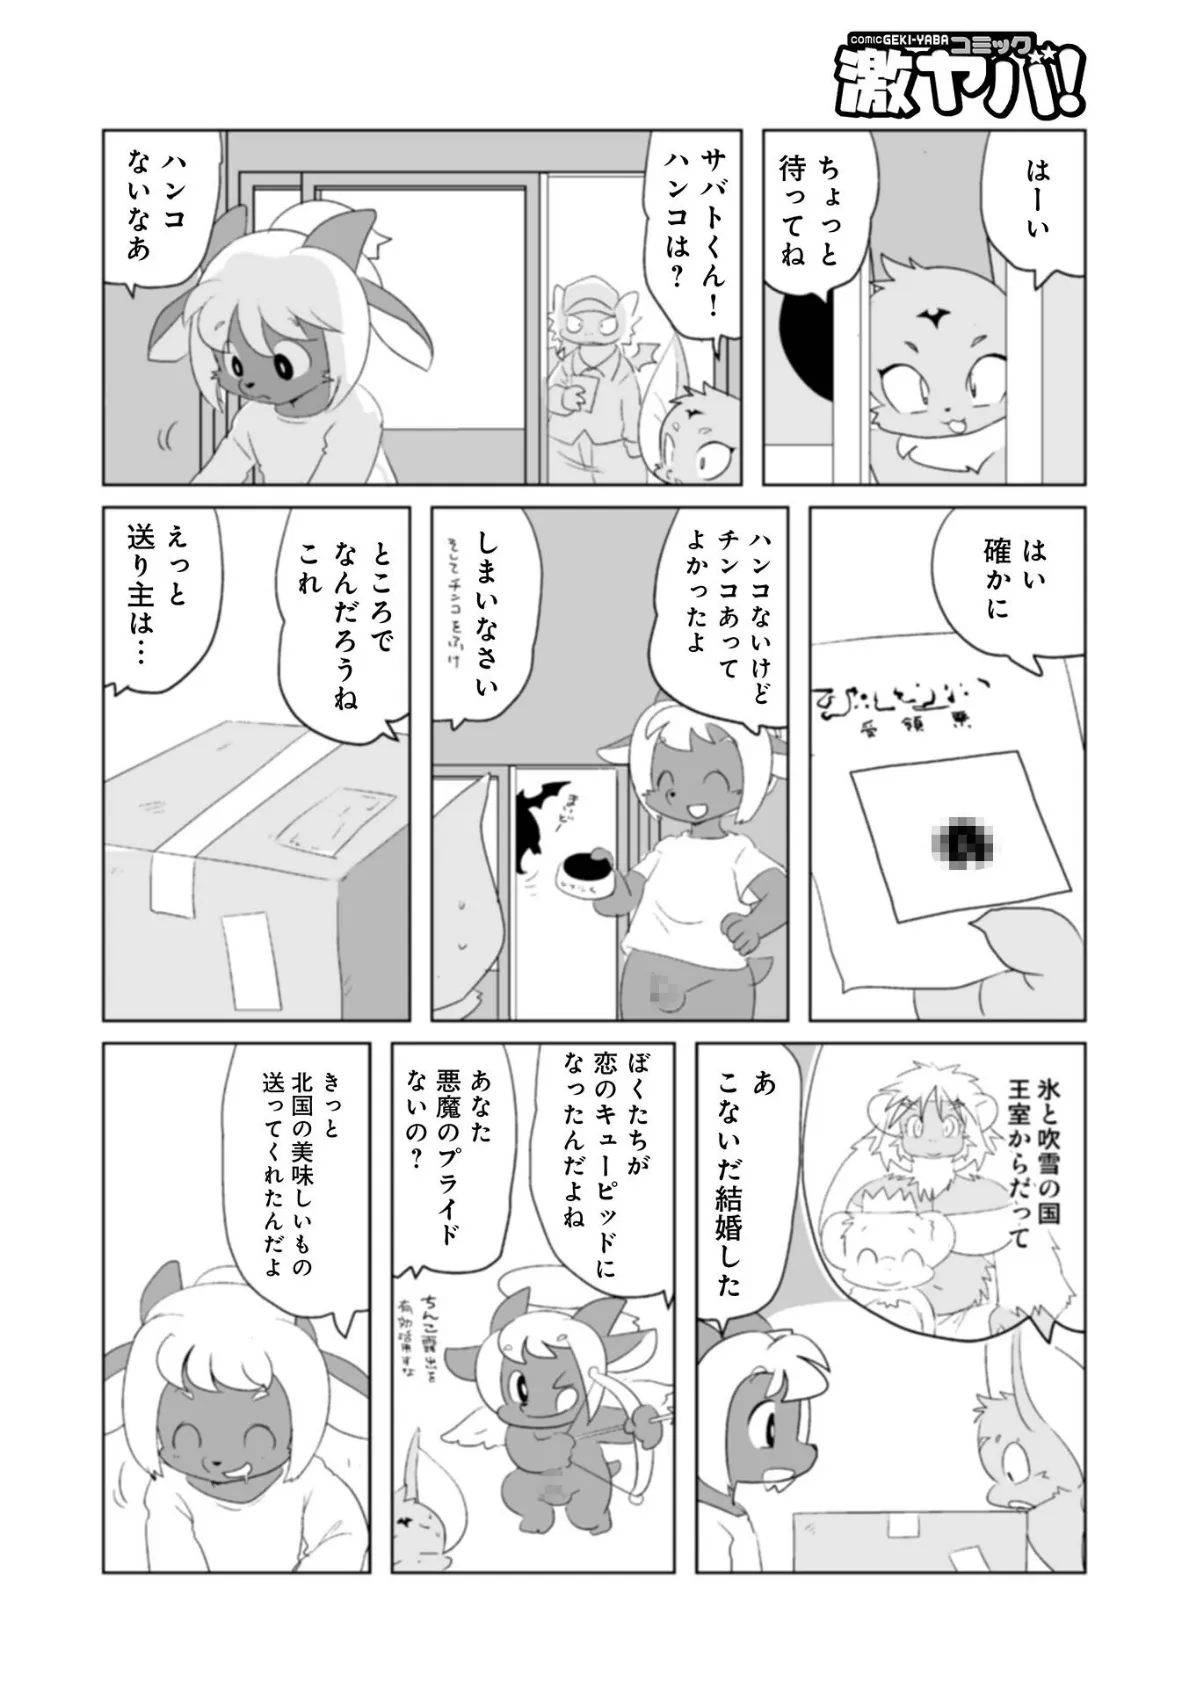 魔界探偵サバトくん第1巻 48ページ